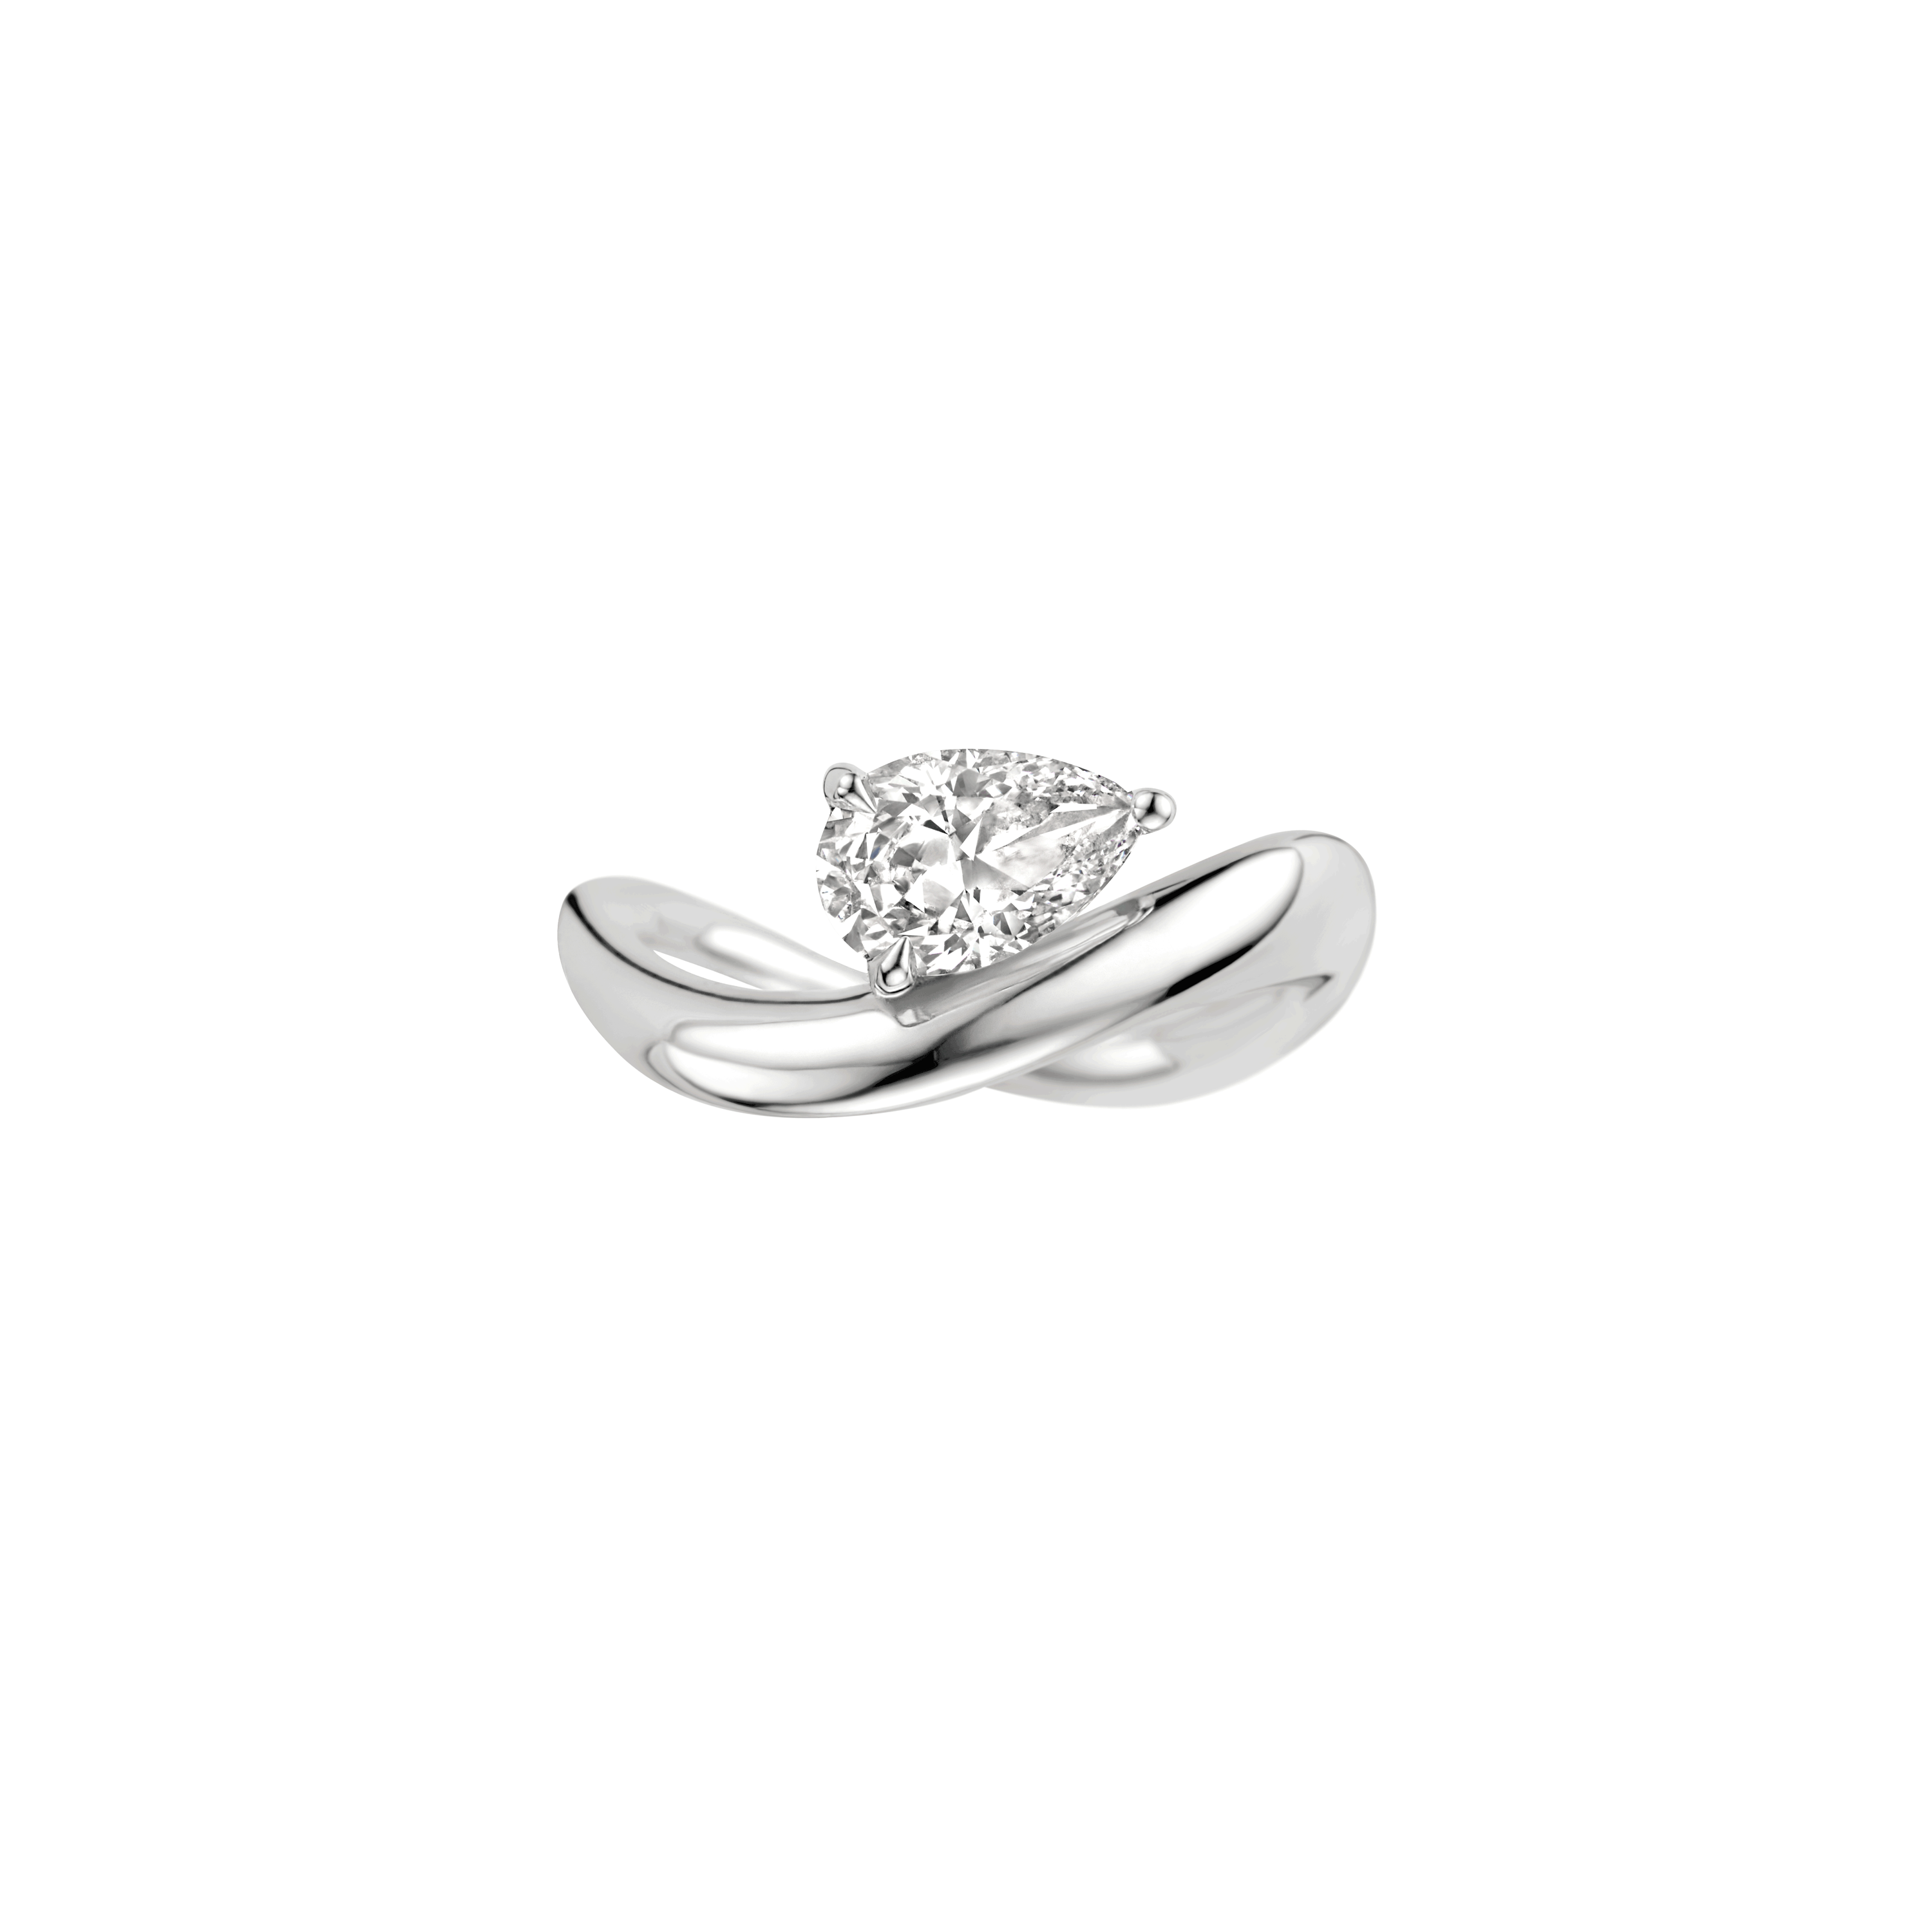 Jackie Engagement ring packshot - white gold 